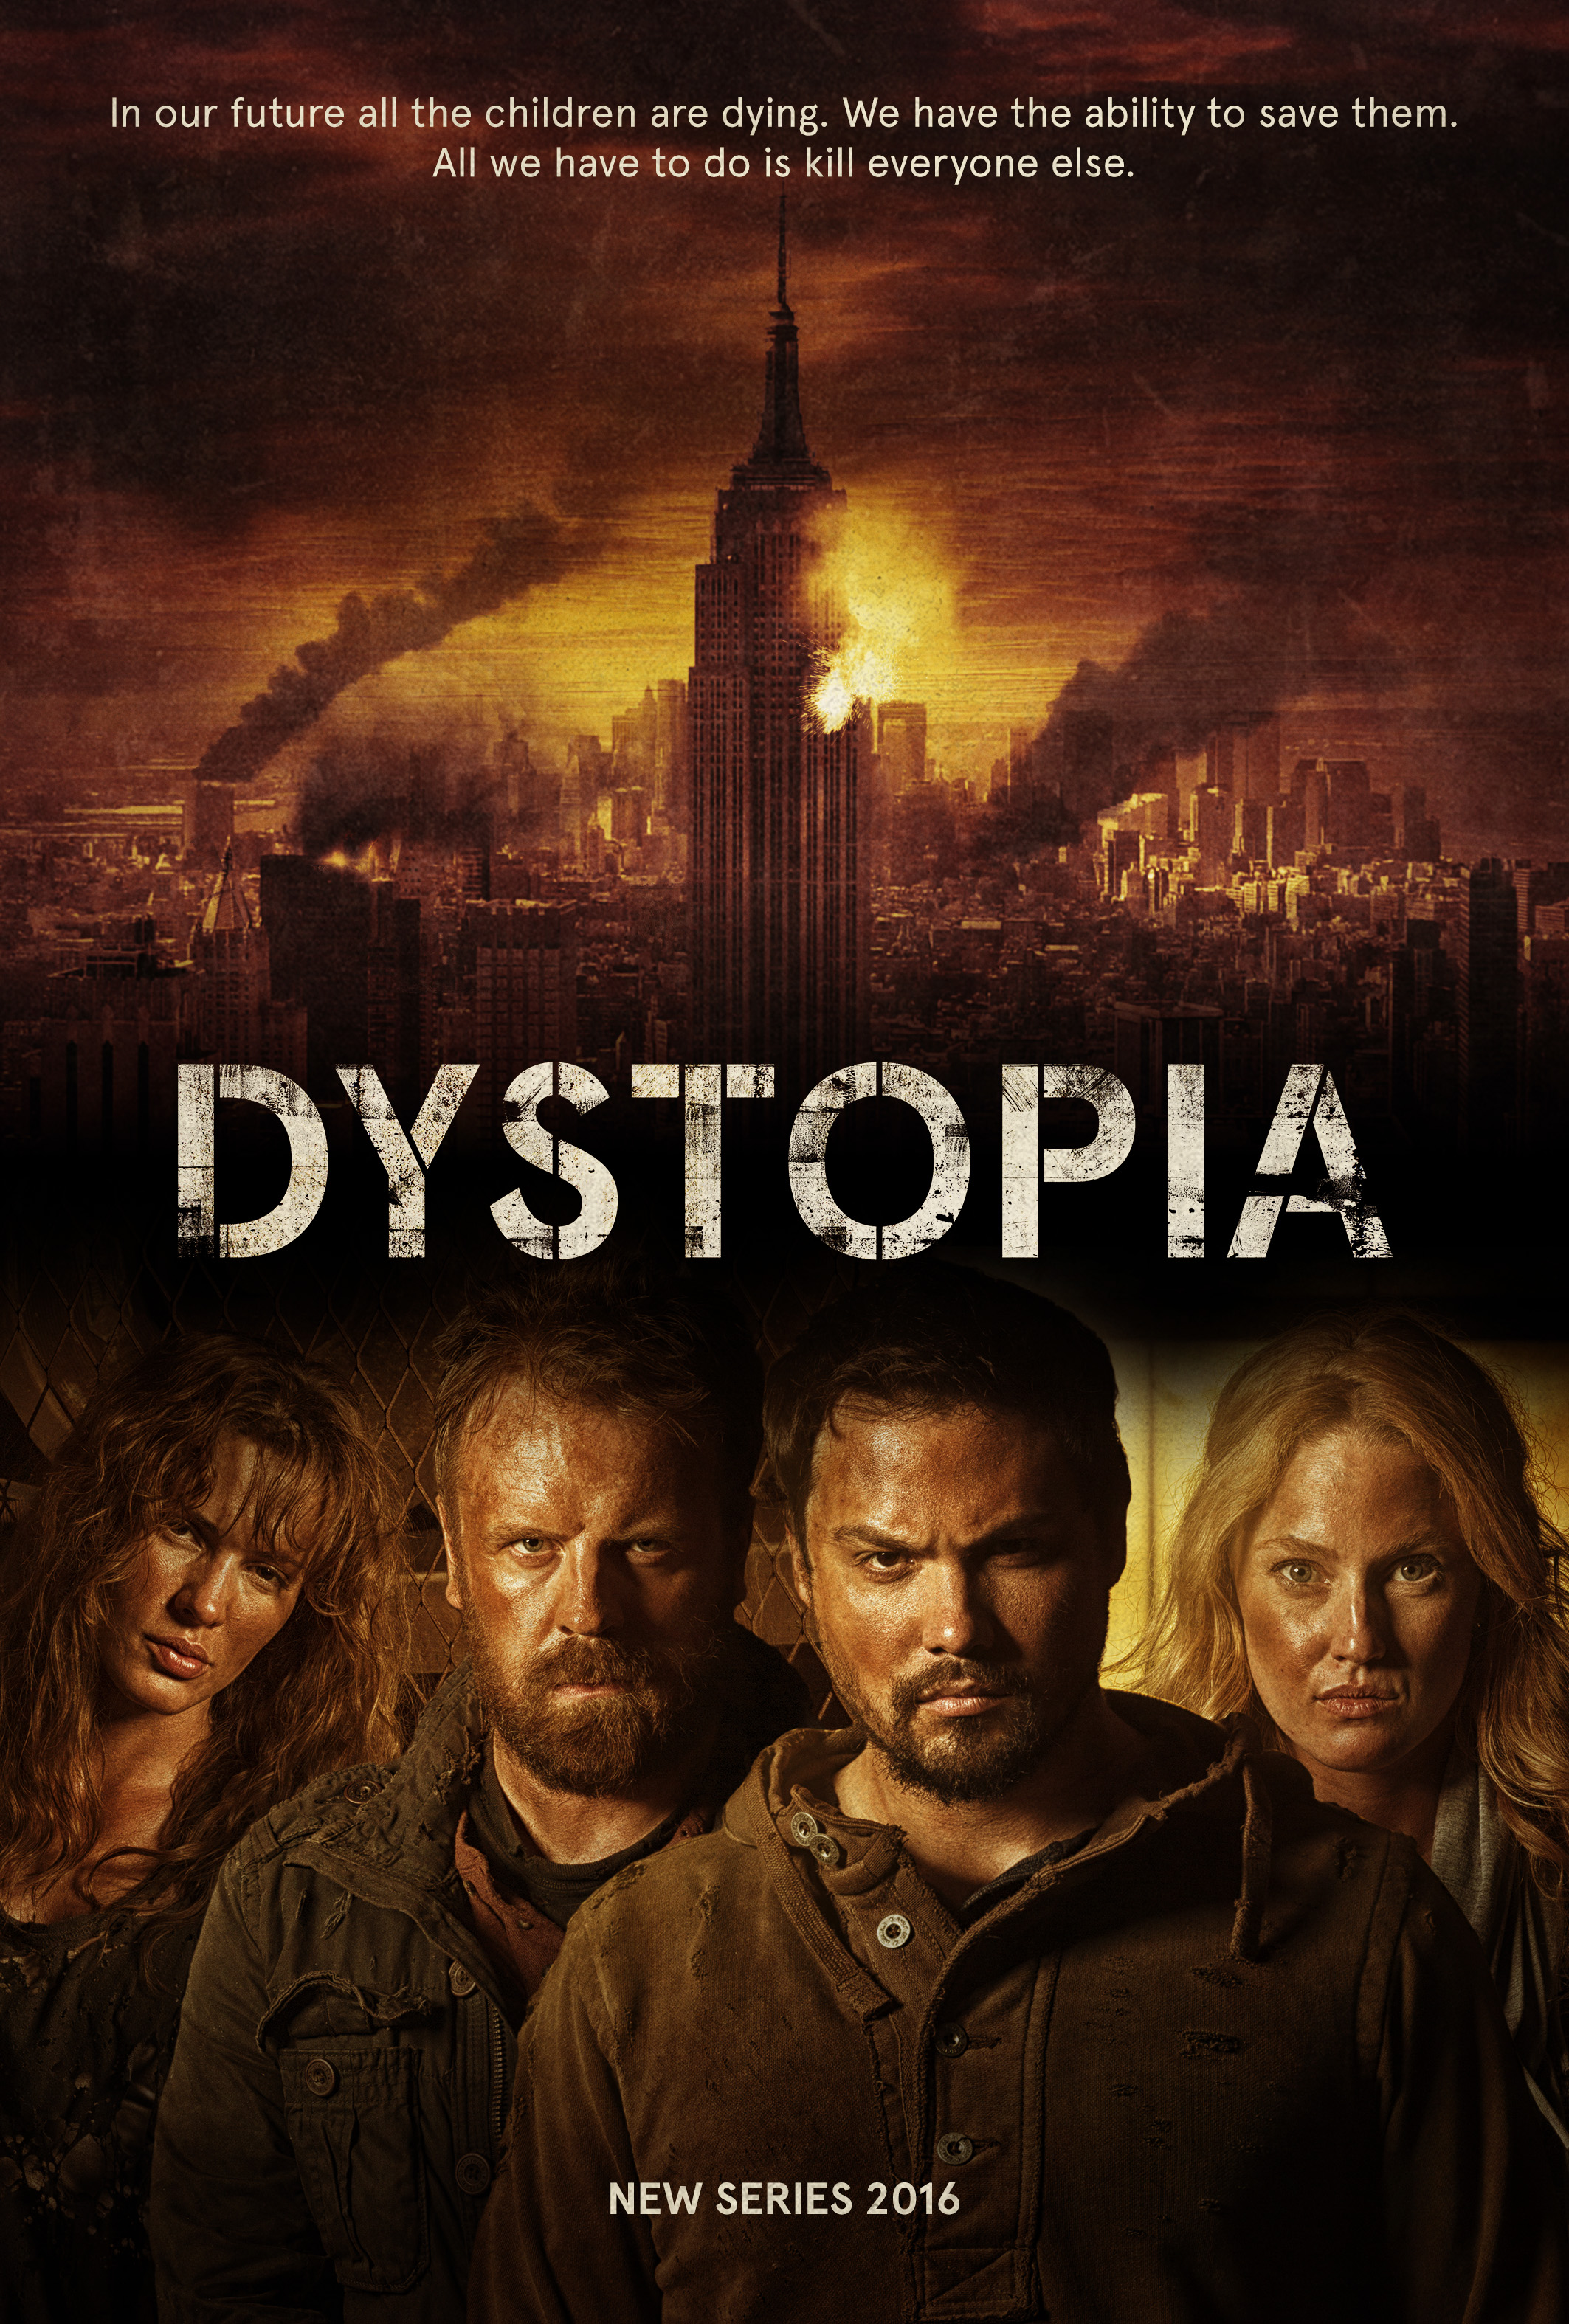 Michael Copon, Simon Phillips, Eve Mauro and Sheena Colette in Dystopia (2015)